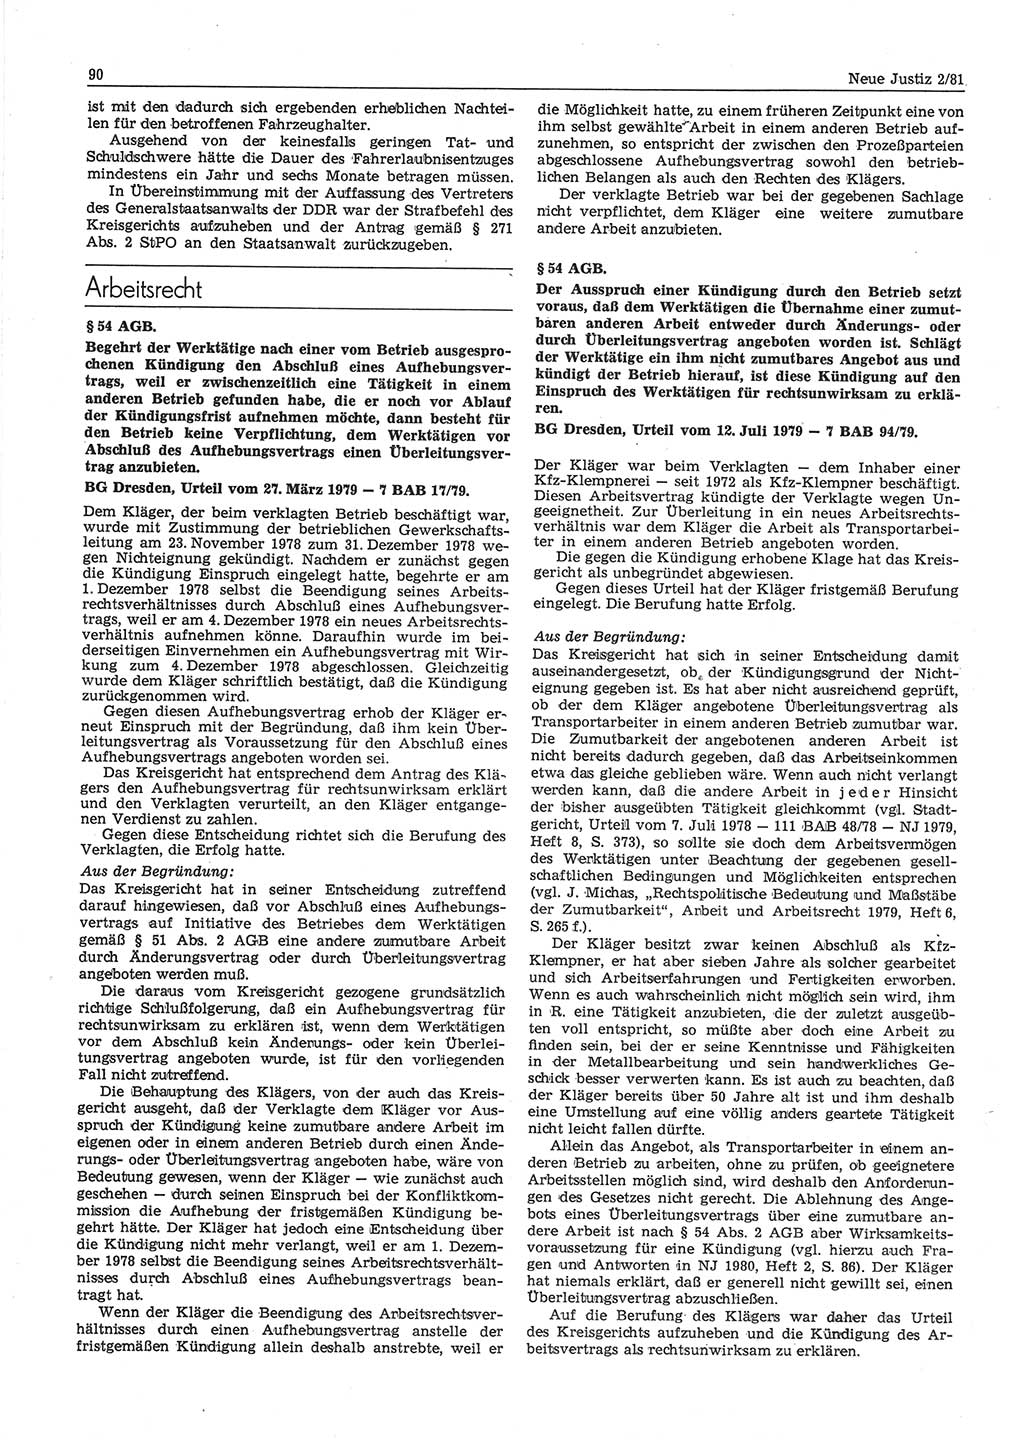 Neue Justiz (NJ), Zeitschrift für sozialistisches Recht und Gesetzlichkeit [Deutsche Demokratische Republik (DDR)], 35. Jahrgang 1981, Seite 90 (NJ DDR 1981, S. 90)